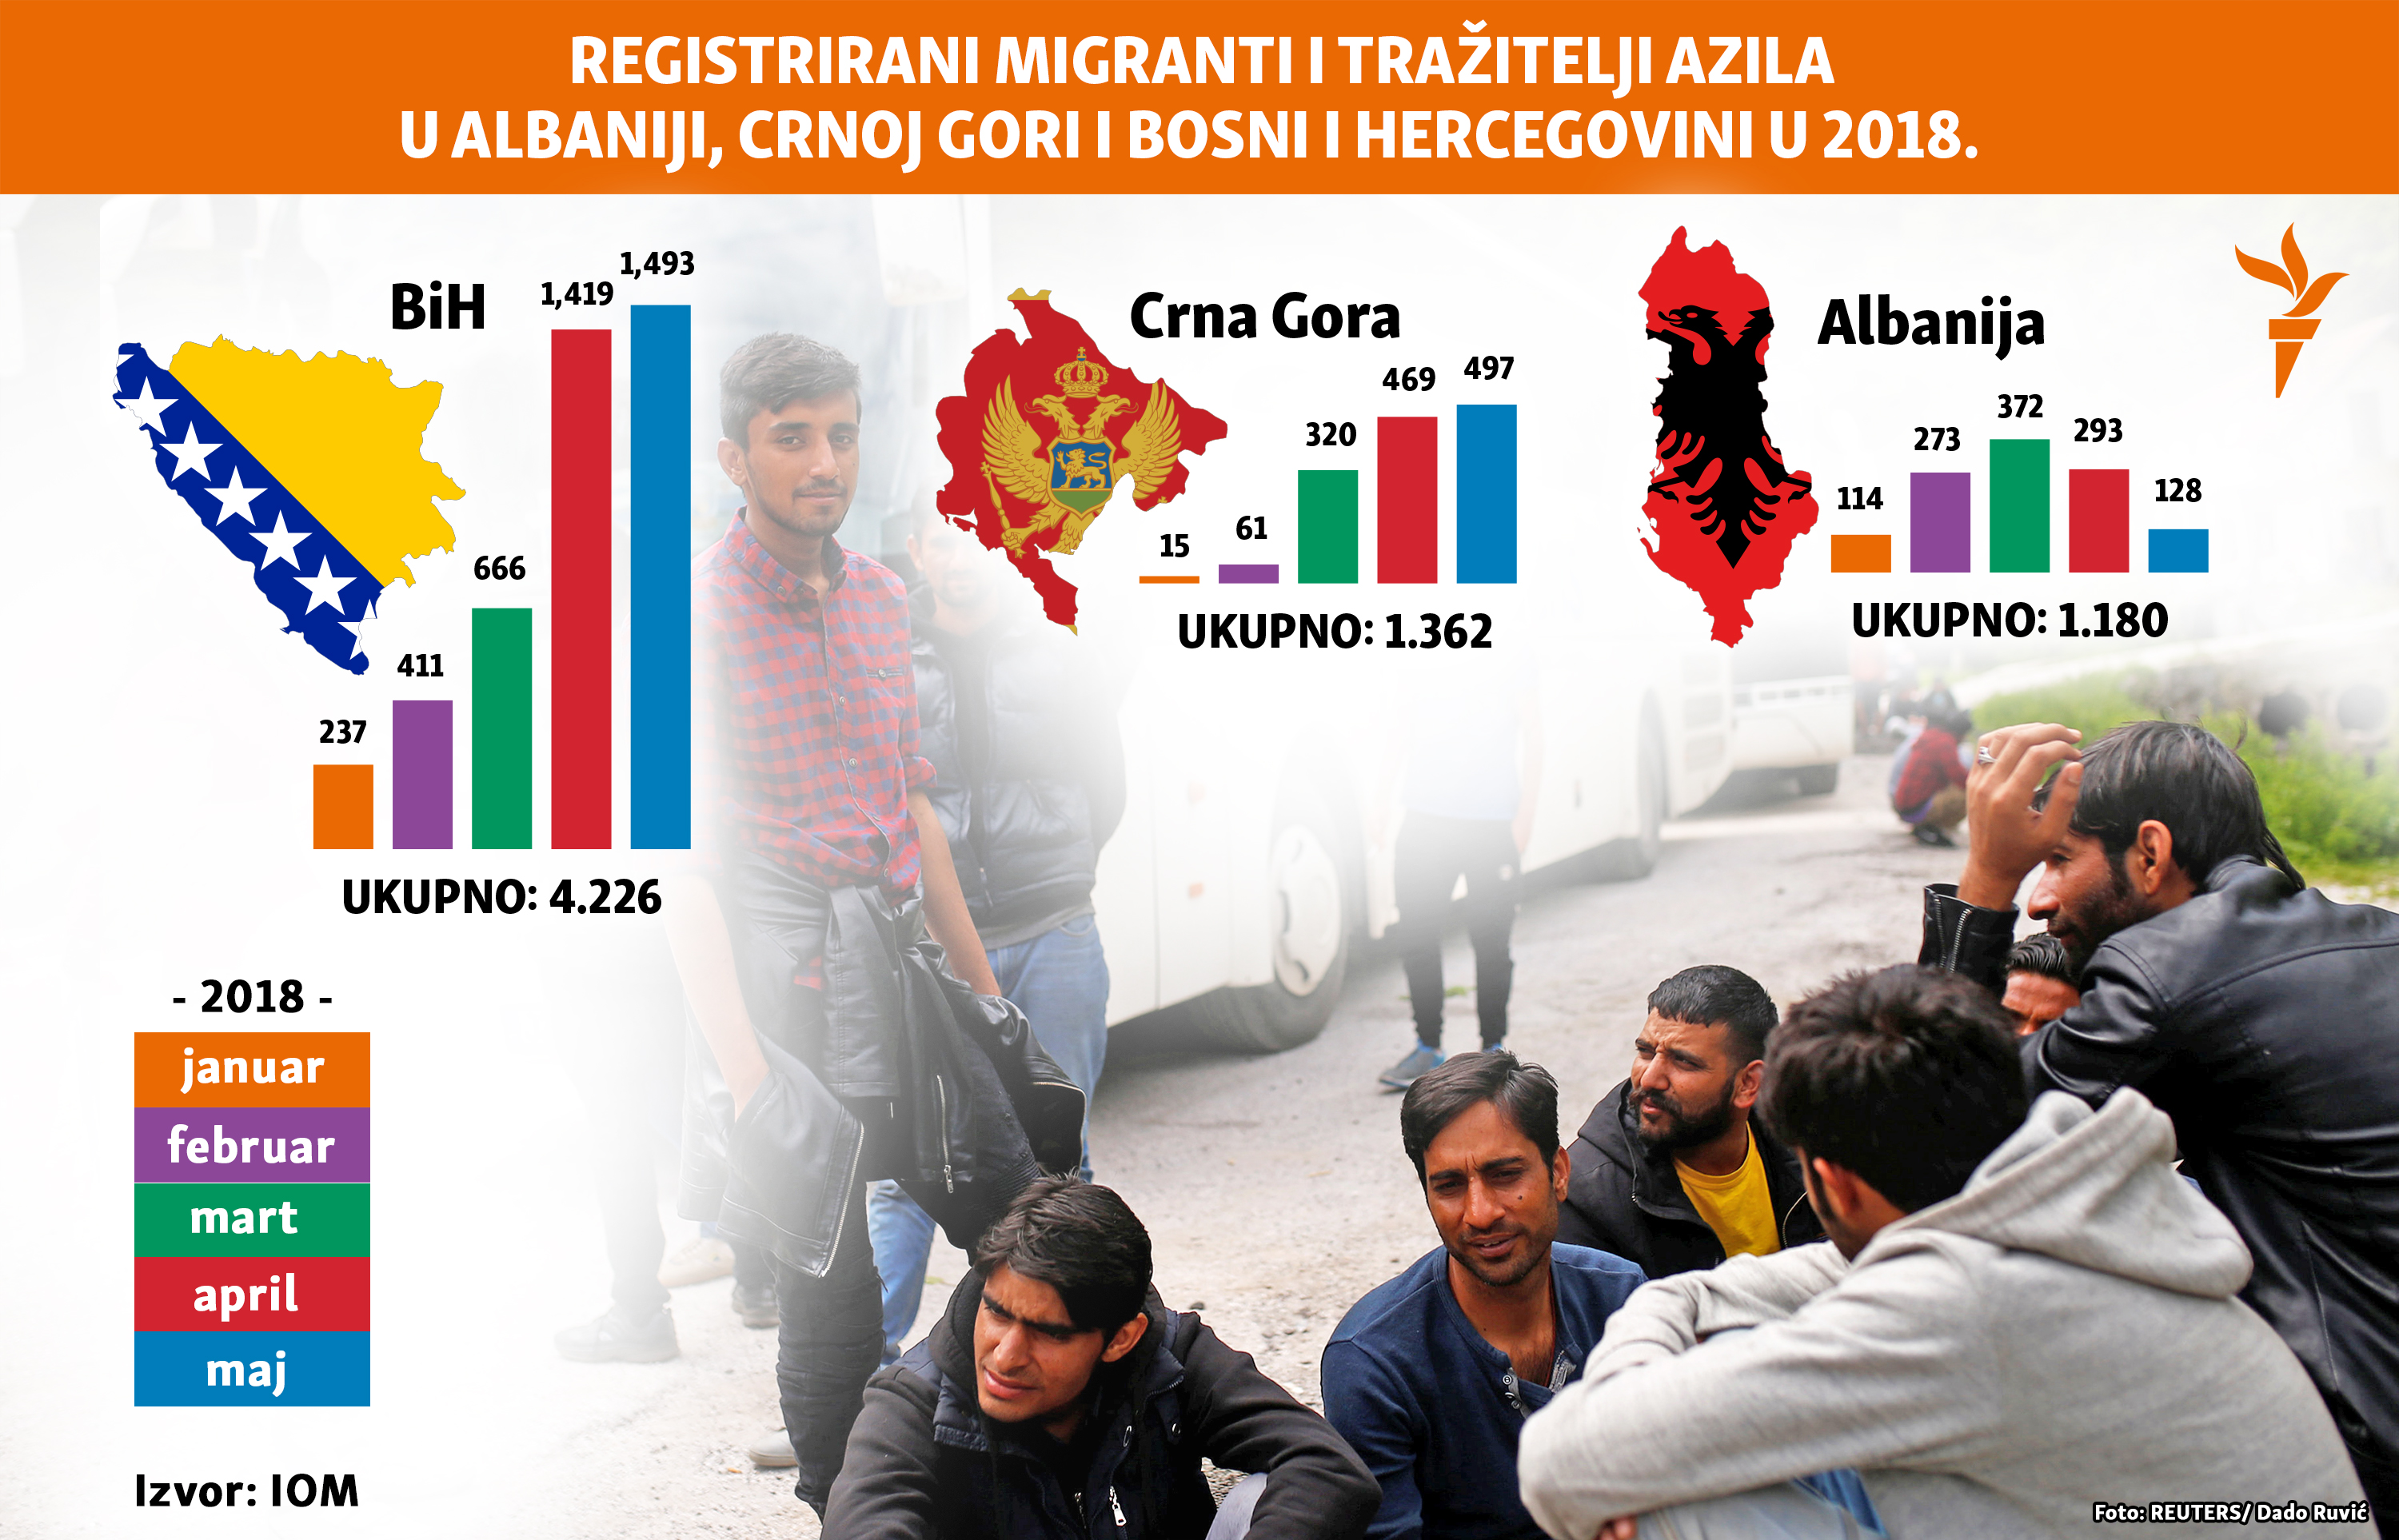  migrant u brojevima na Balkanskoj ruti 2018